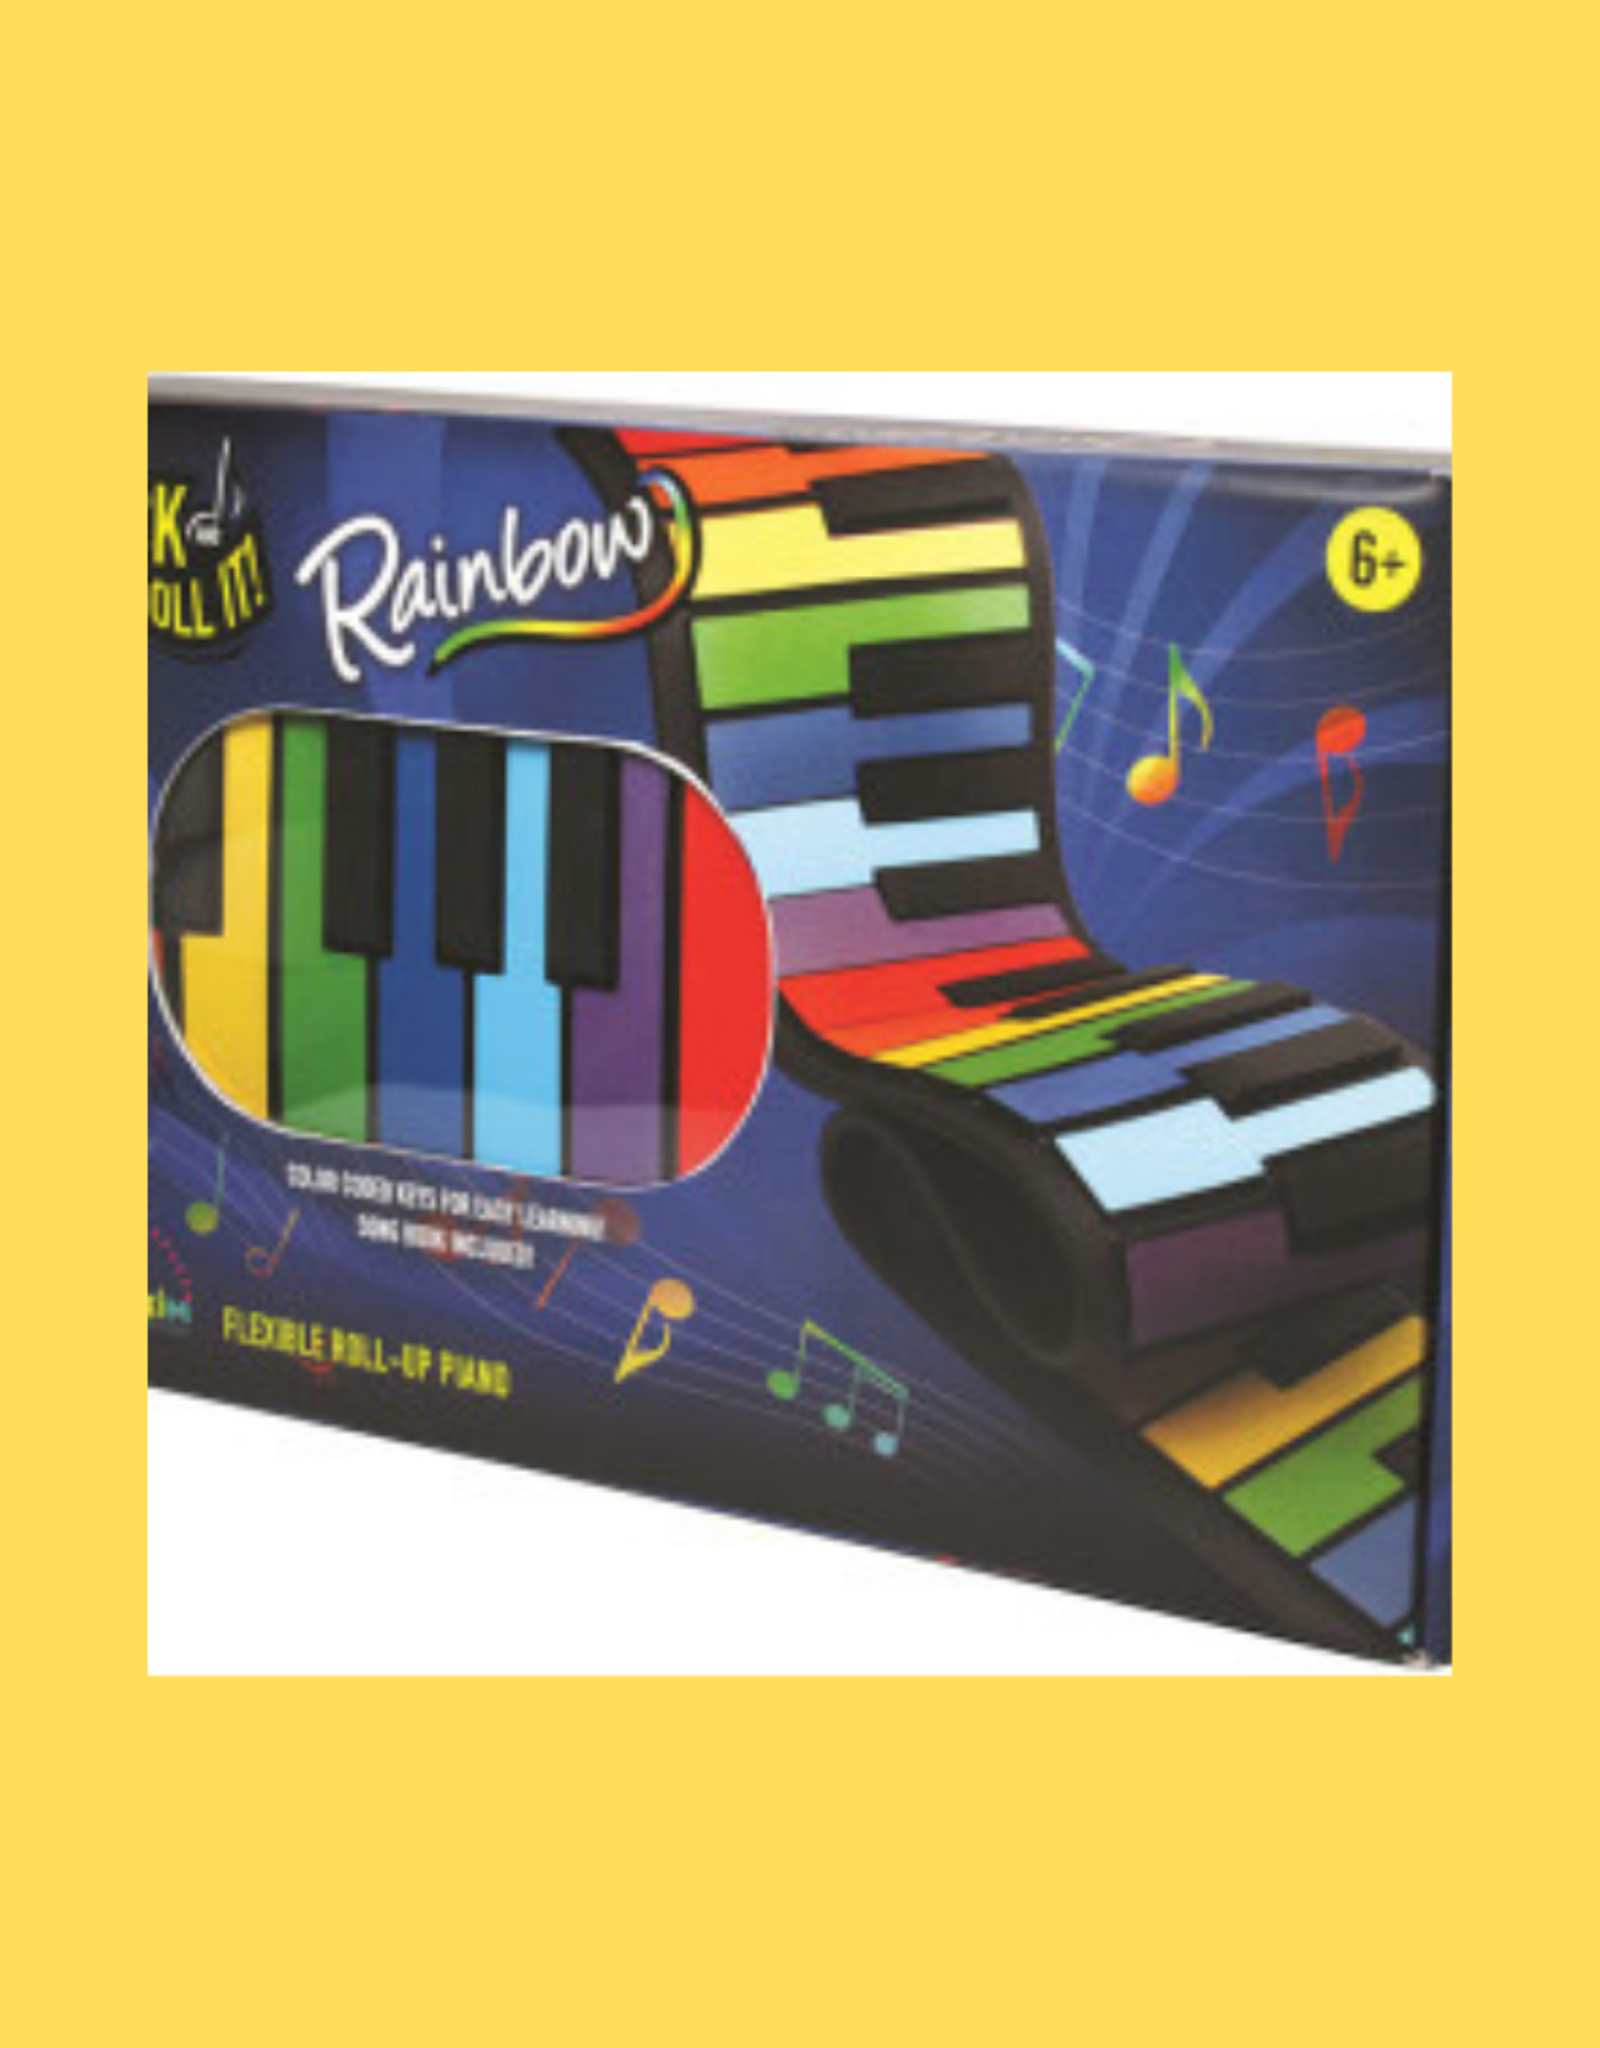 MUKIKIM ROCK & ROLL IT PIANO RAINBOW